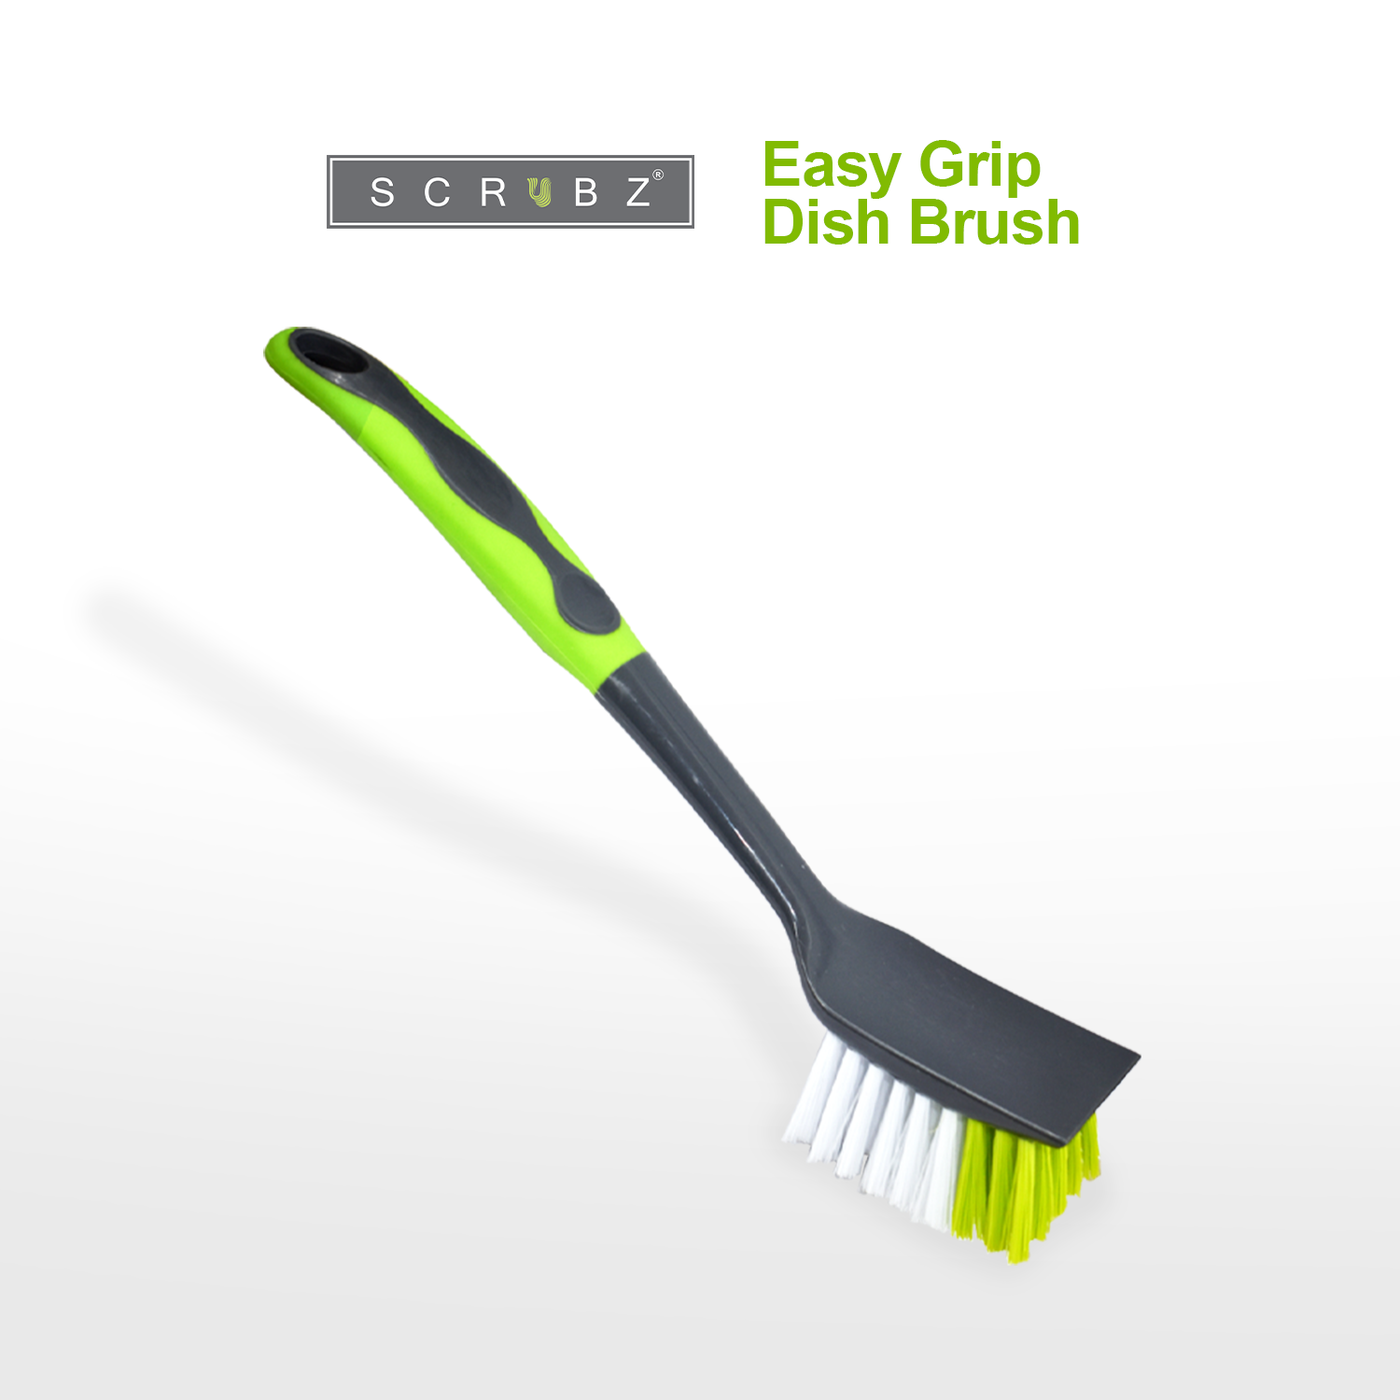 SCRUBZ Premium Dish Brush with Handle